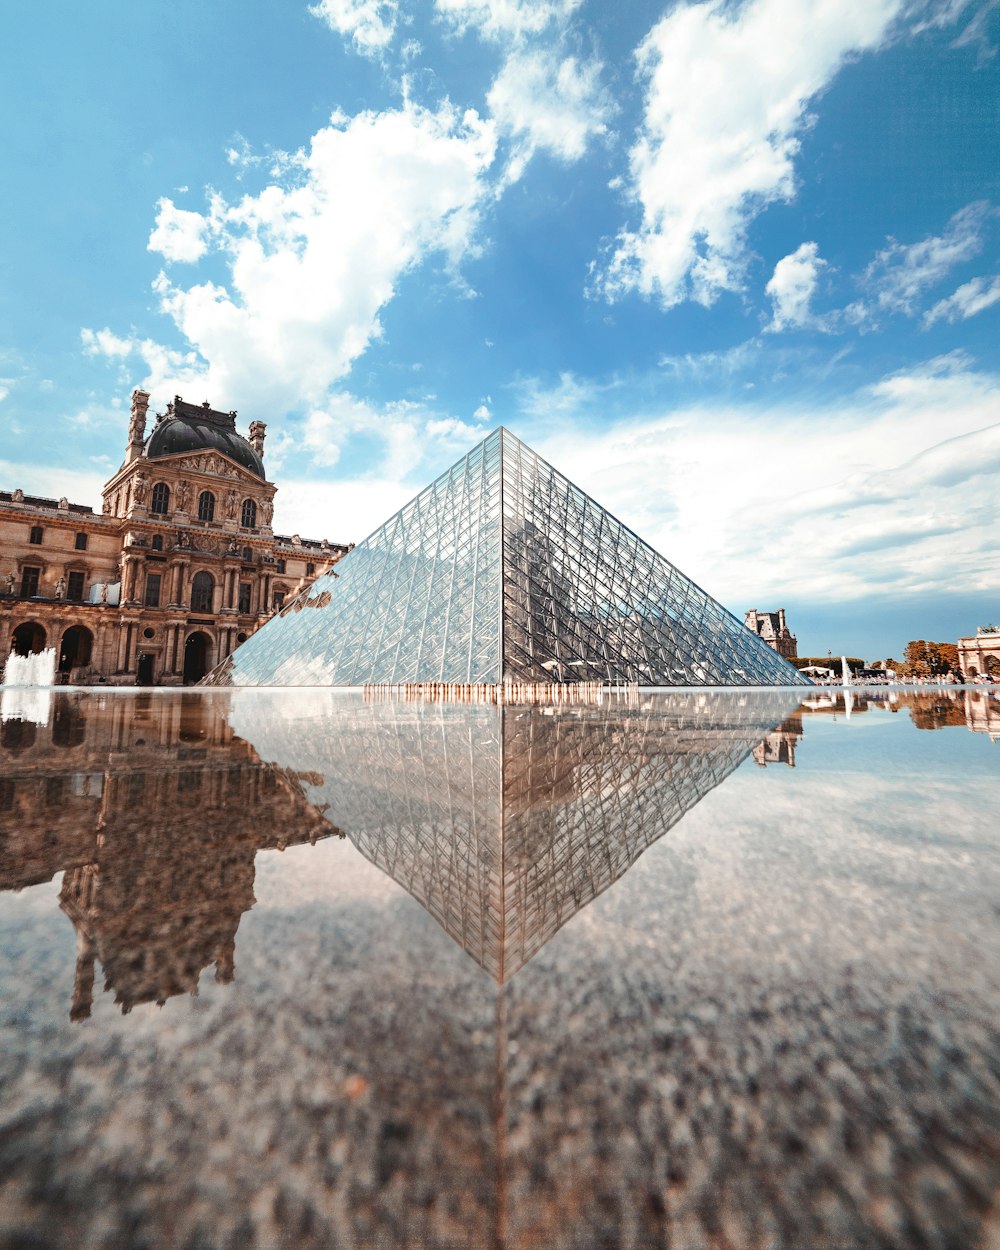 Edificio de pirámide de vidrio cerca del cuerpo de agua durante el día